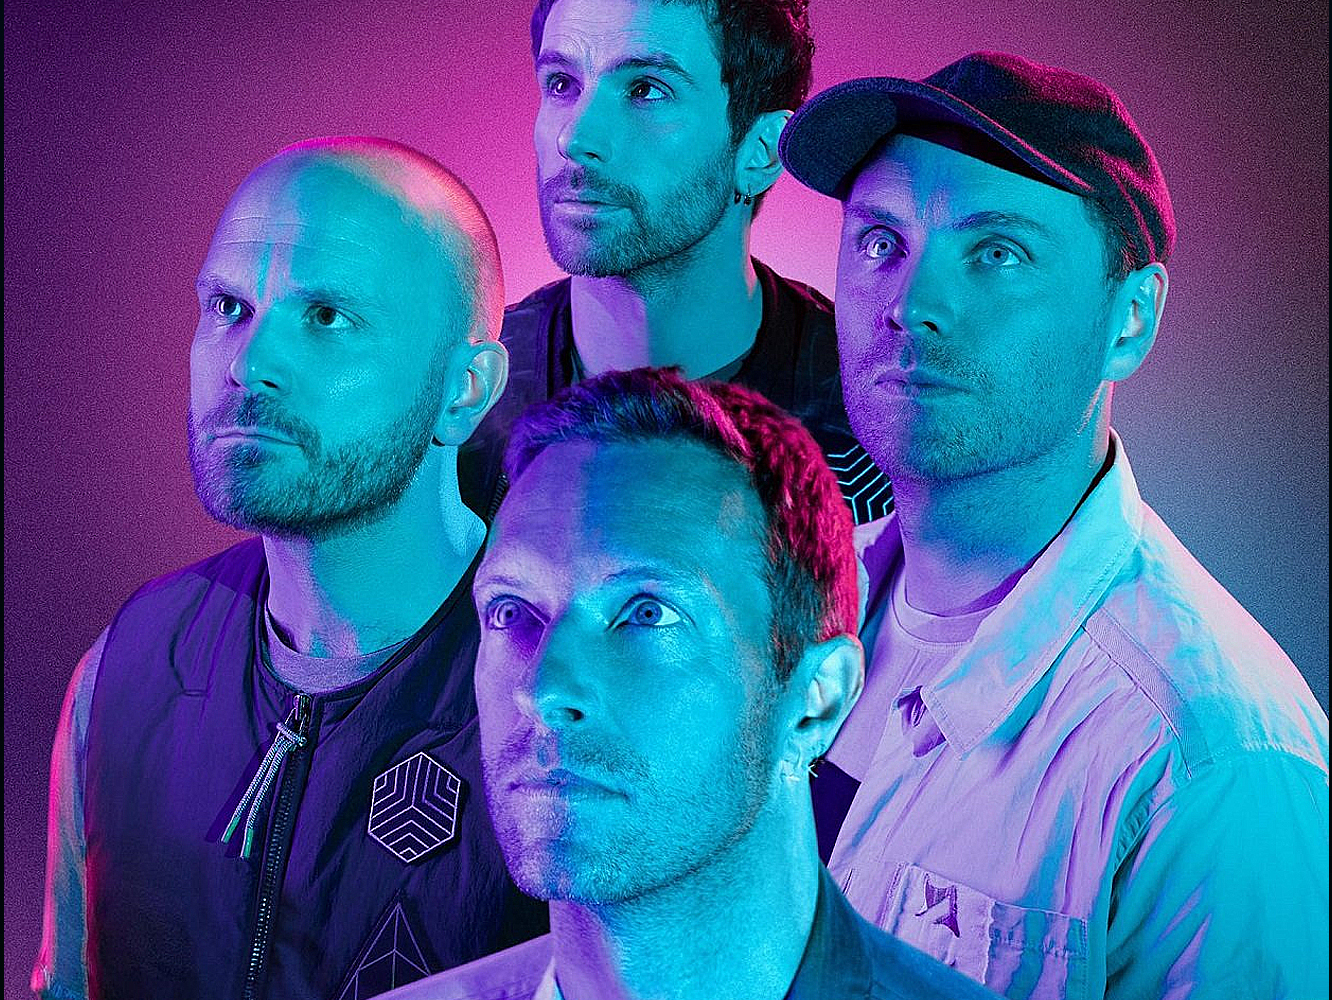  Coldplay, de vuelta al pop más puro en ‘Higher Power’, co-producida por Max Martin